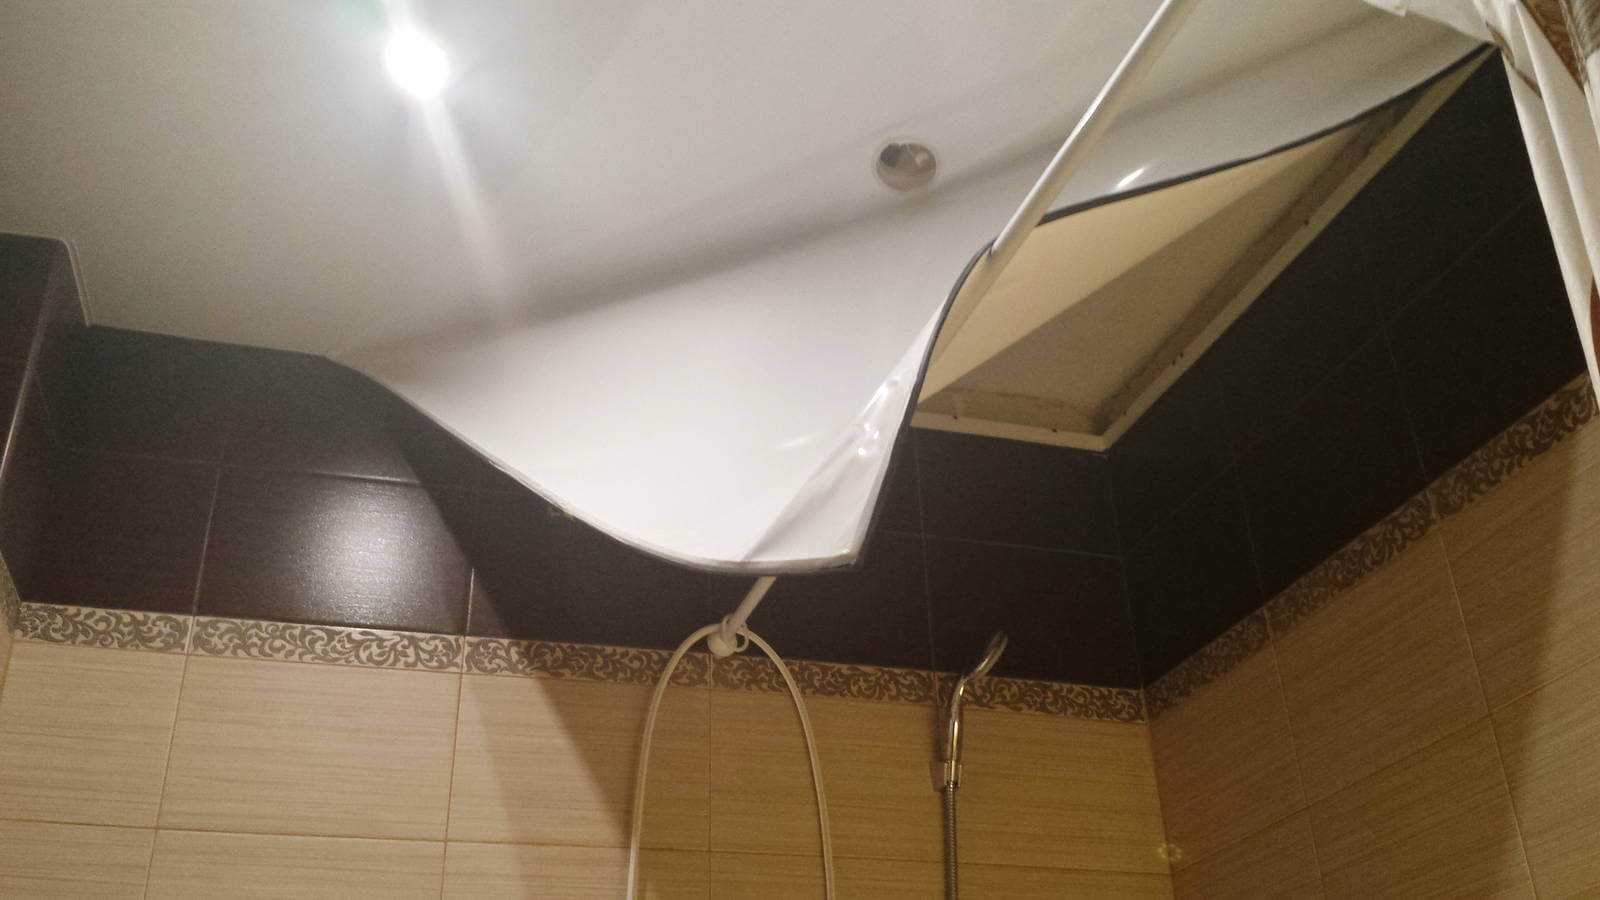 Плюсы и минусы использования натяжного потолка в ванной комнате